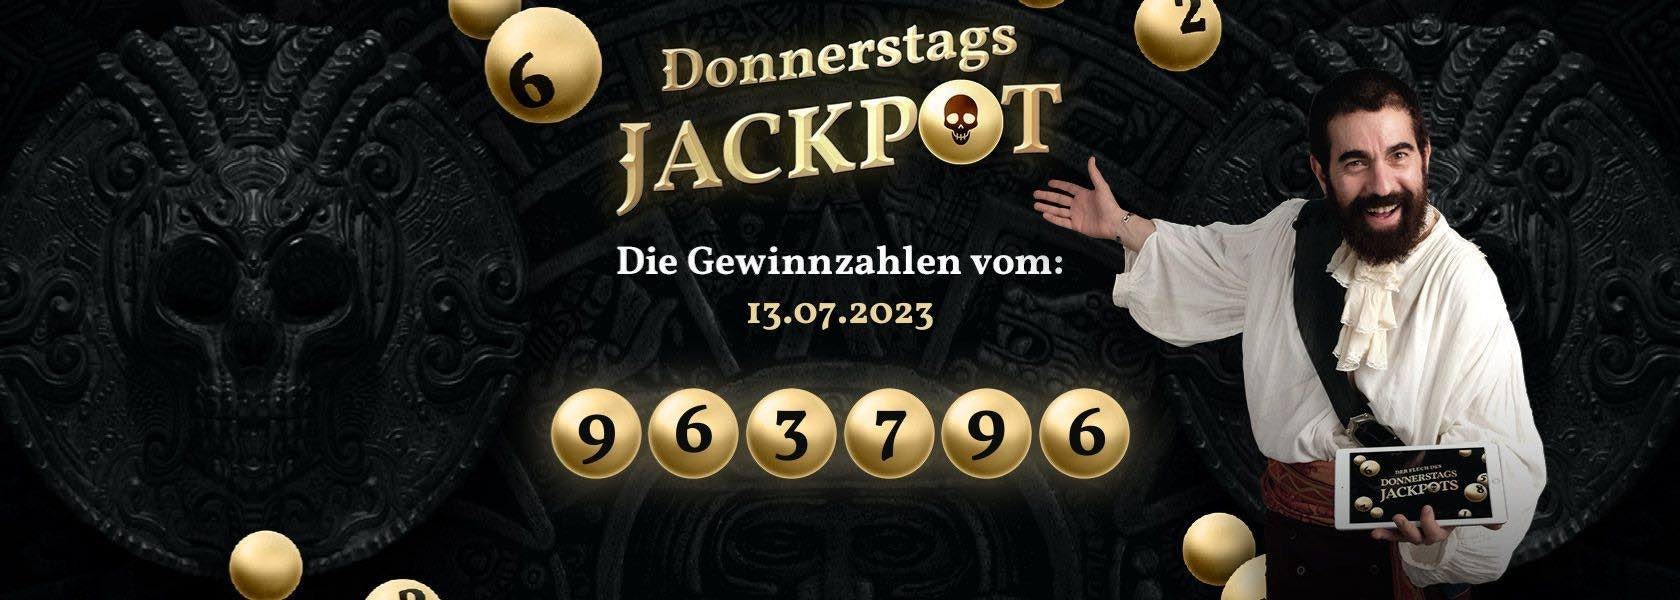 jackpot-piraten-donnerstags-jackpot-heute-13072023